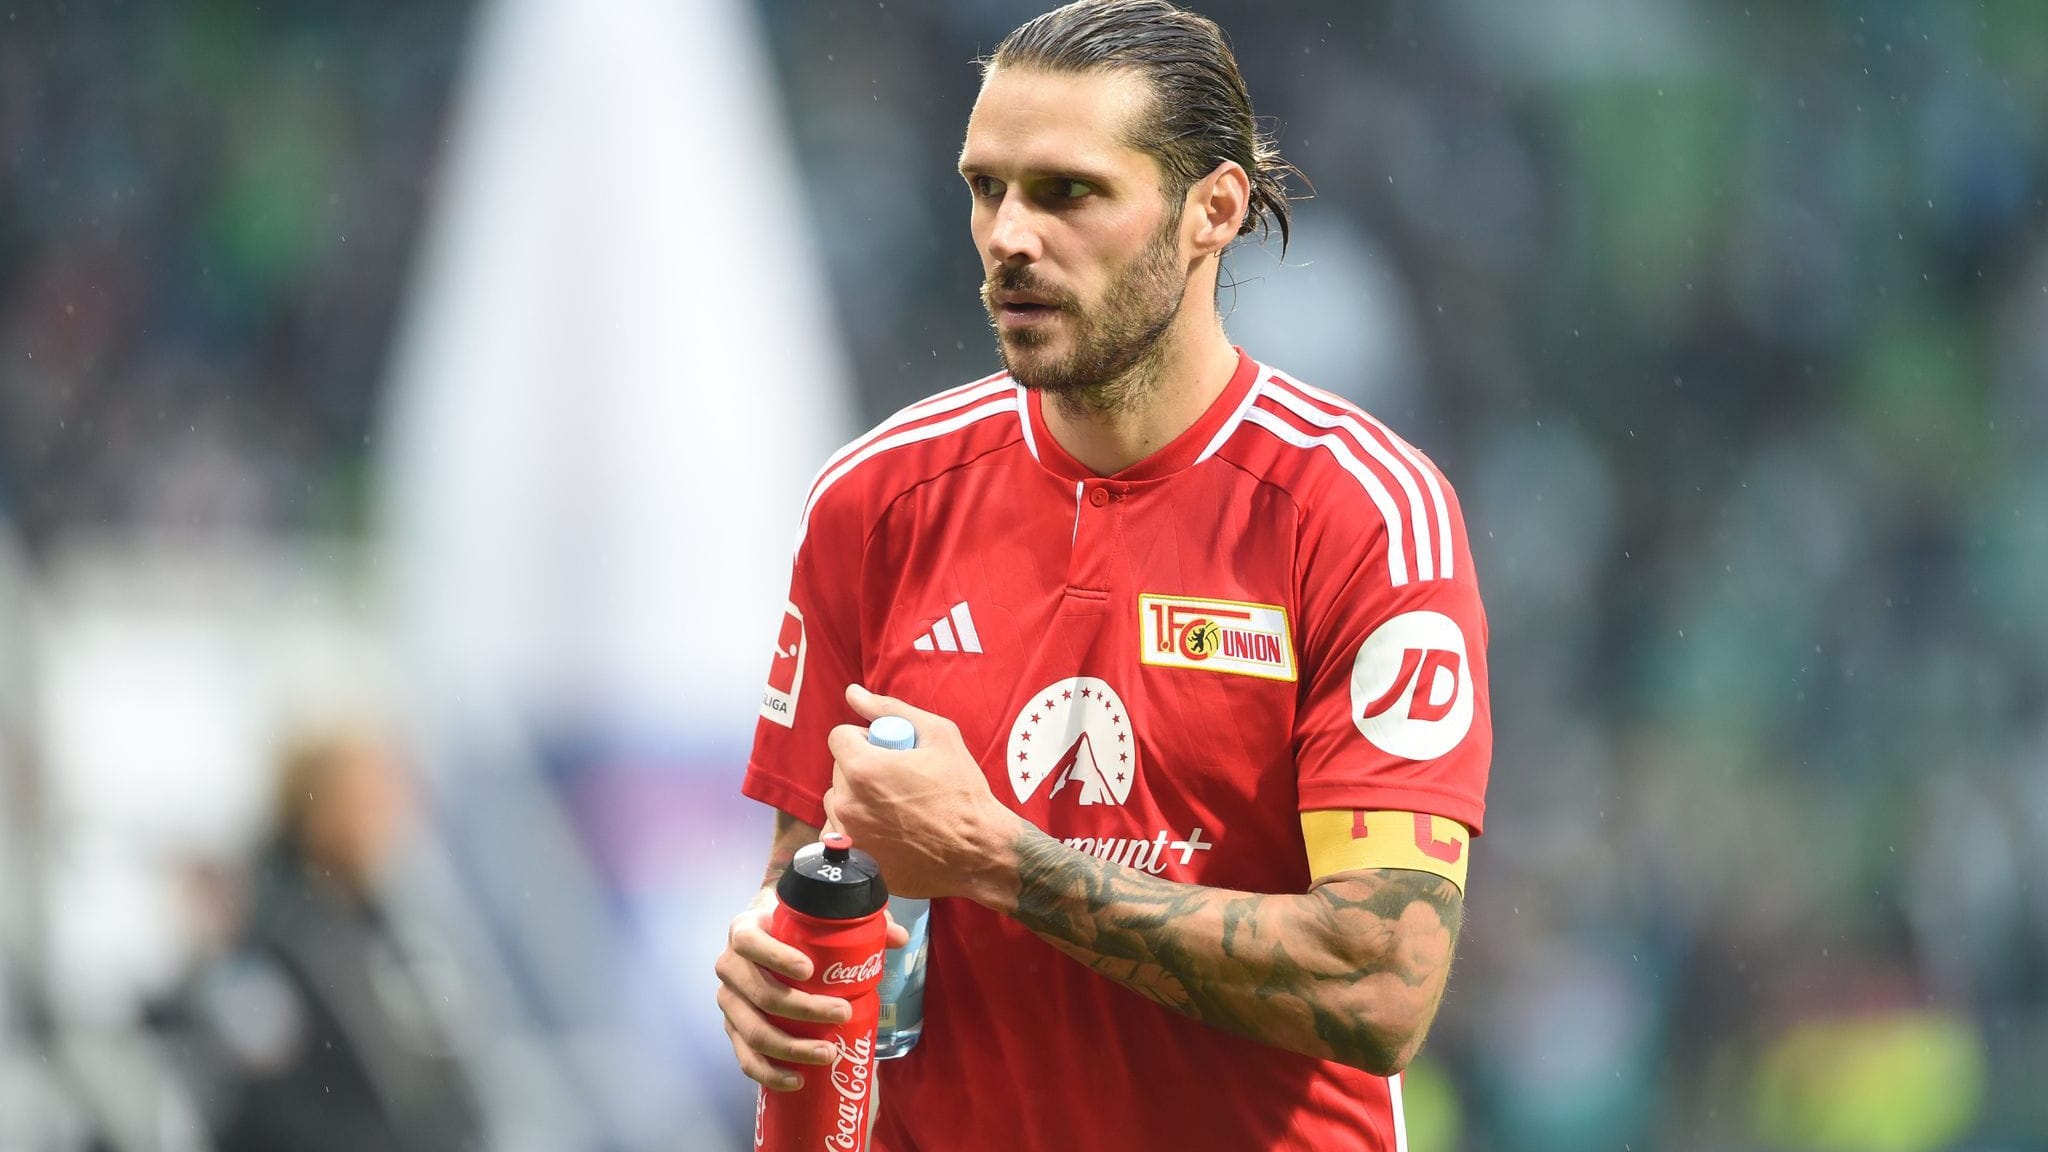 DFB sperrt Union-Kapitän Trimmel für zwei Spiele